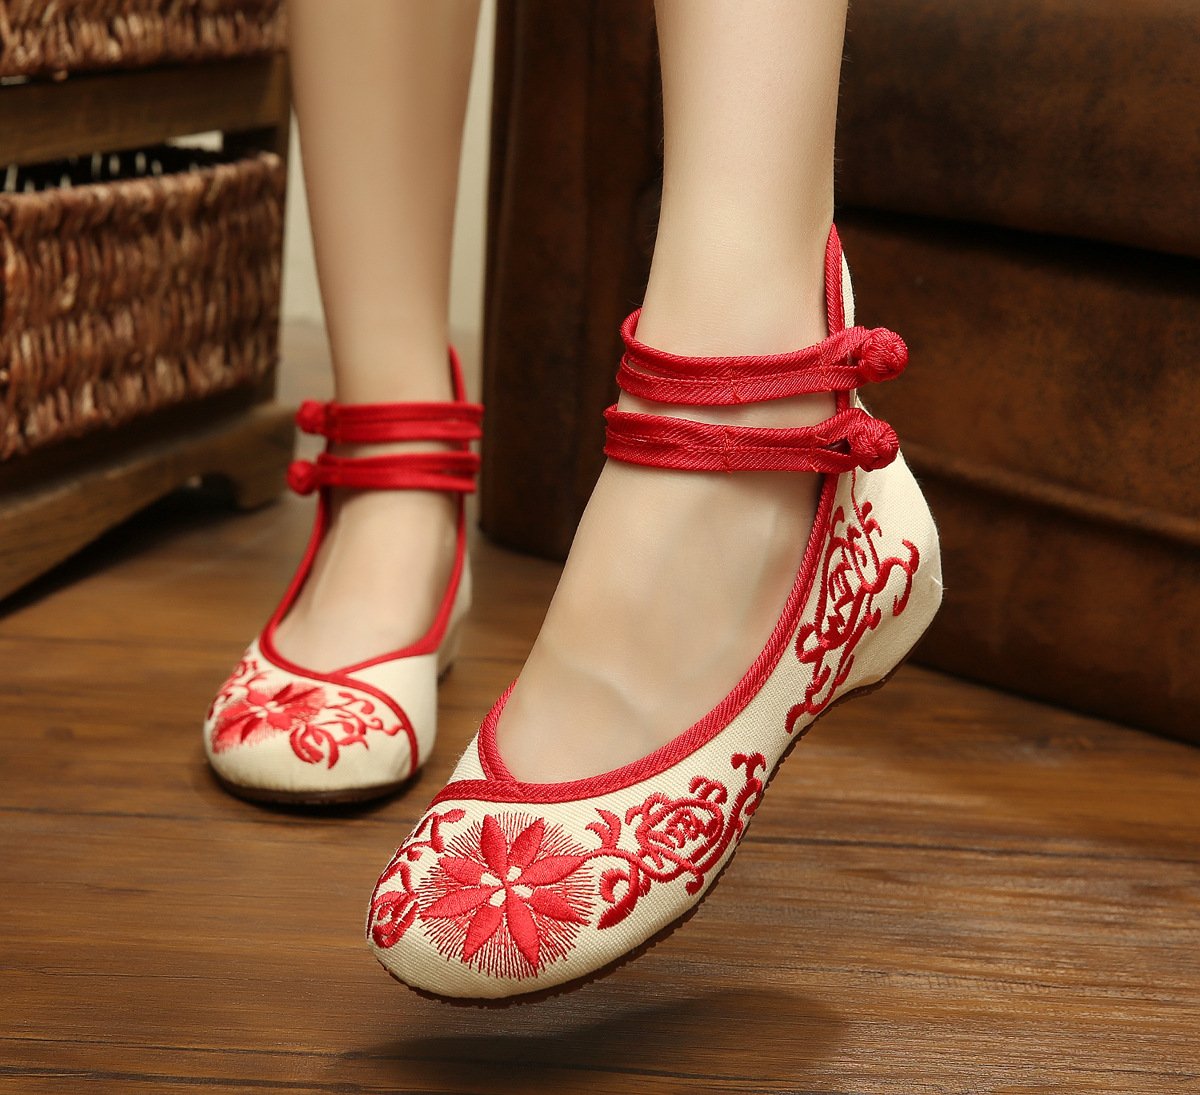 Традиционные китайские туфли